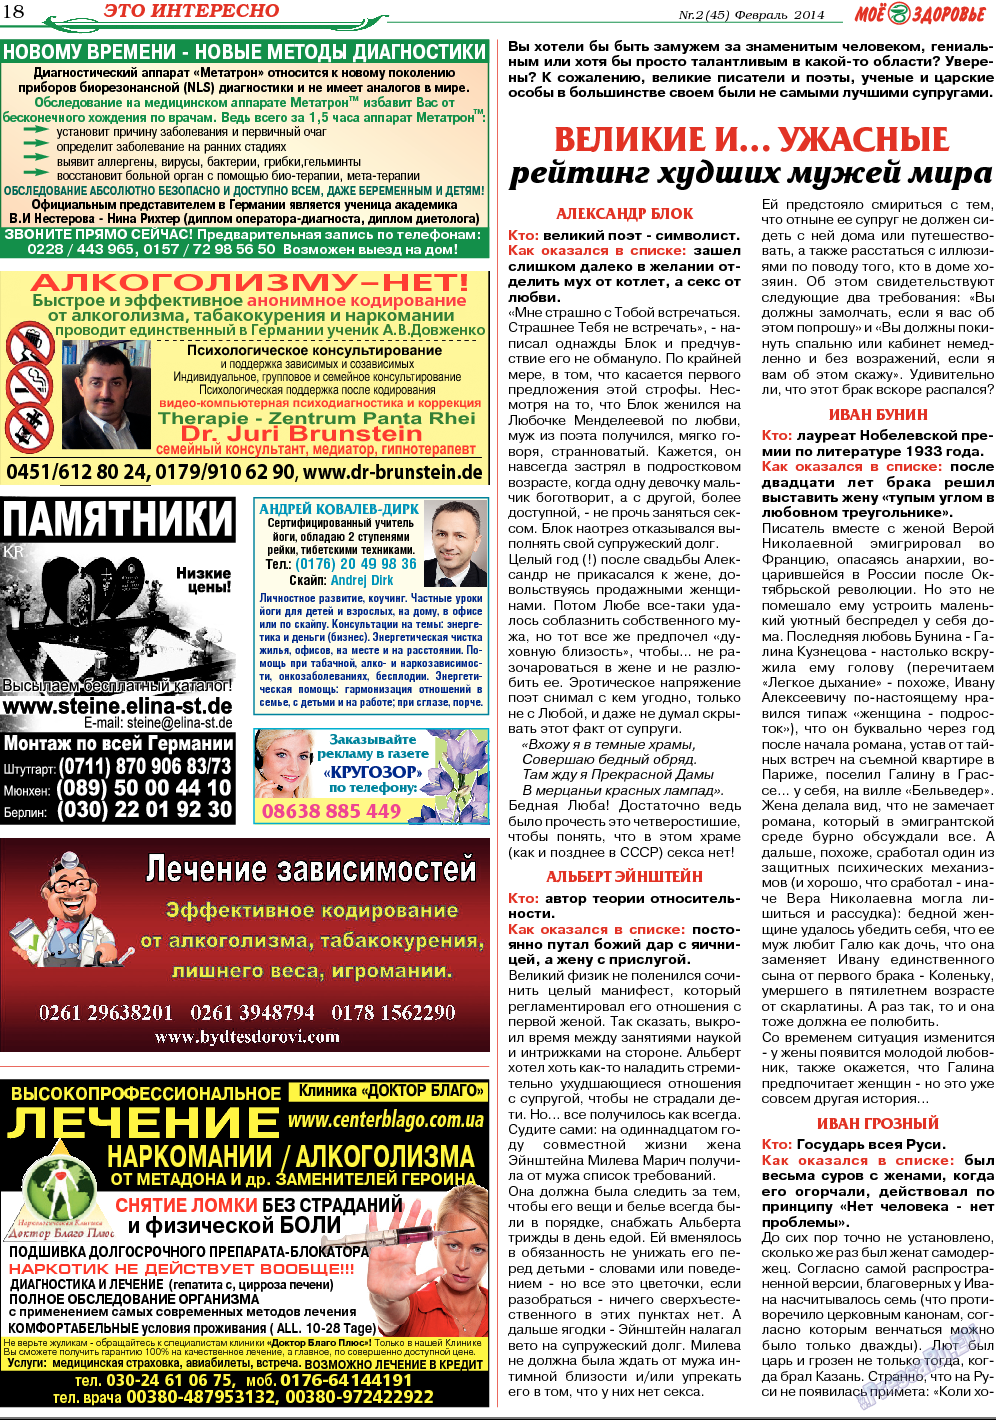 Кругозор, газета. 2014 №2 стр.18